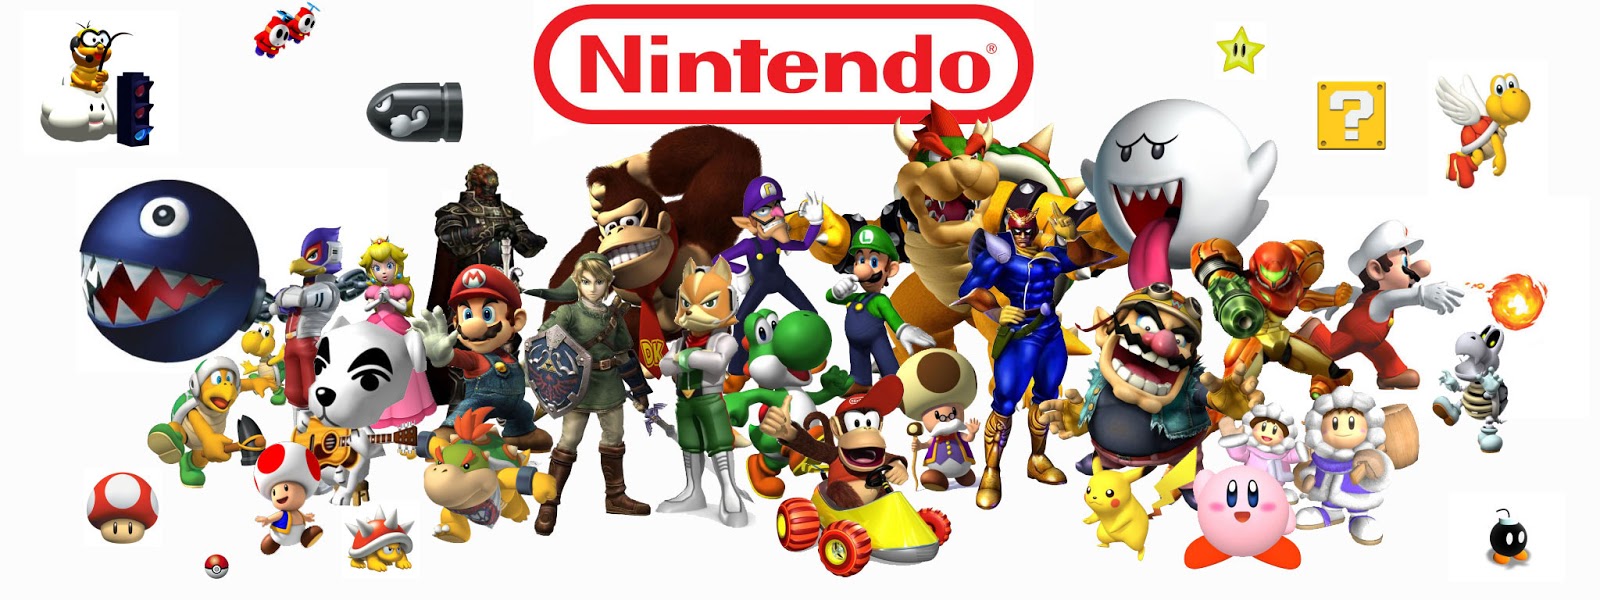 Juegos Nintendo Viejos Gratis : Juegos viejos de nintendo mario bros - YouTube